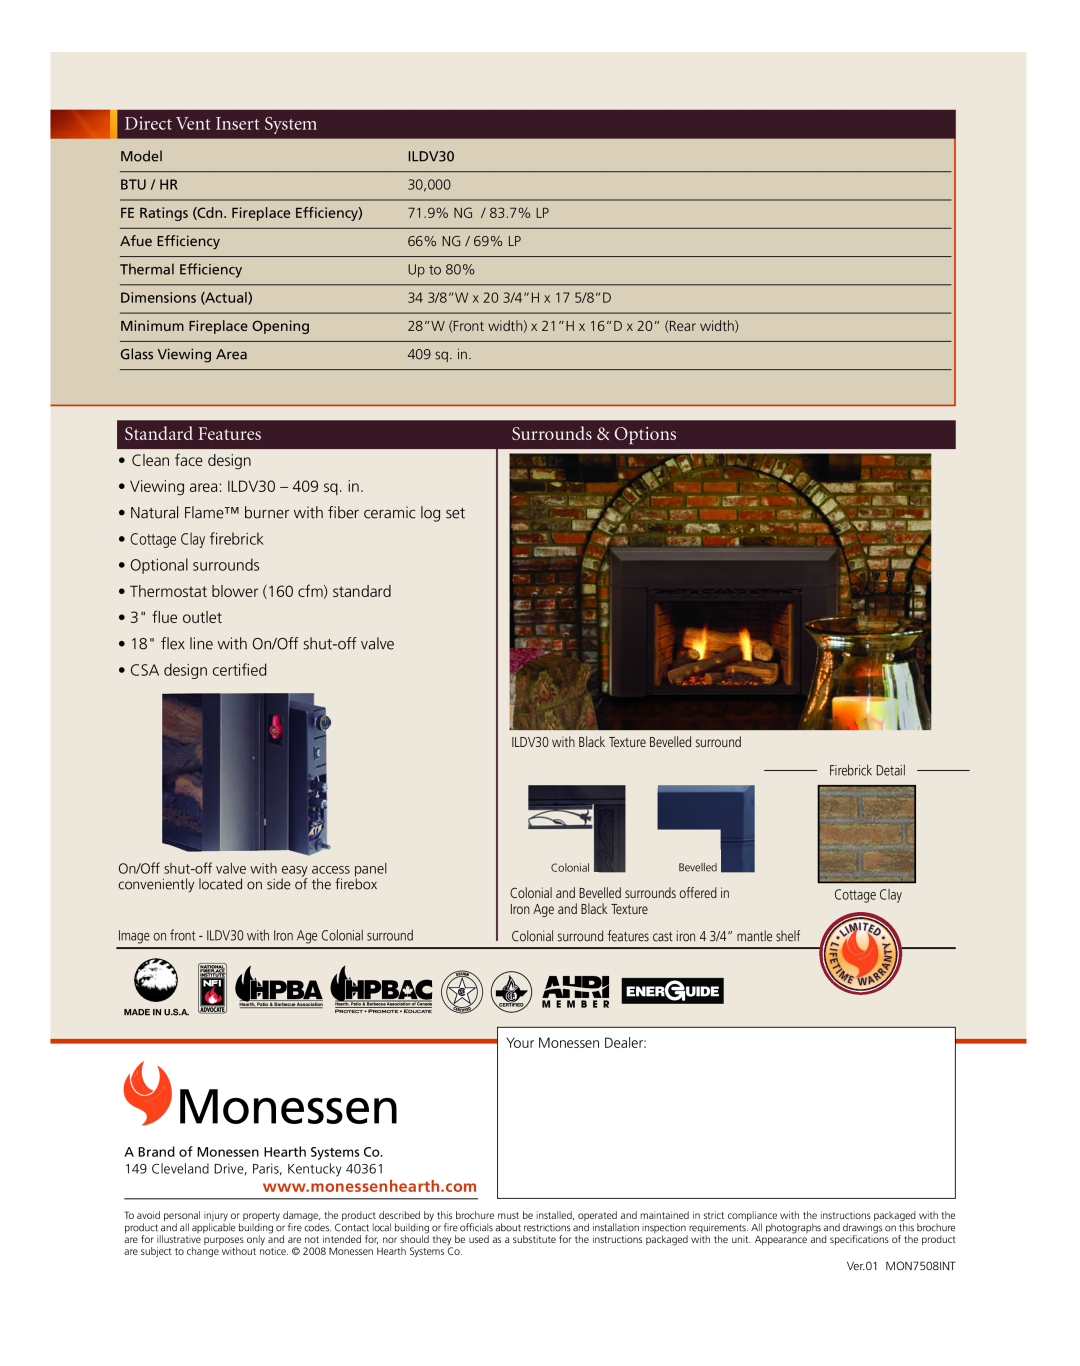 Monessen Hearth manual Monessen, Hpba, Clean face design Viewing area ILDV30 - 409 sq. in 